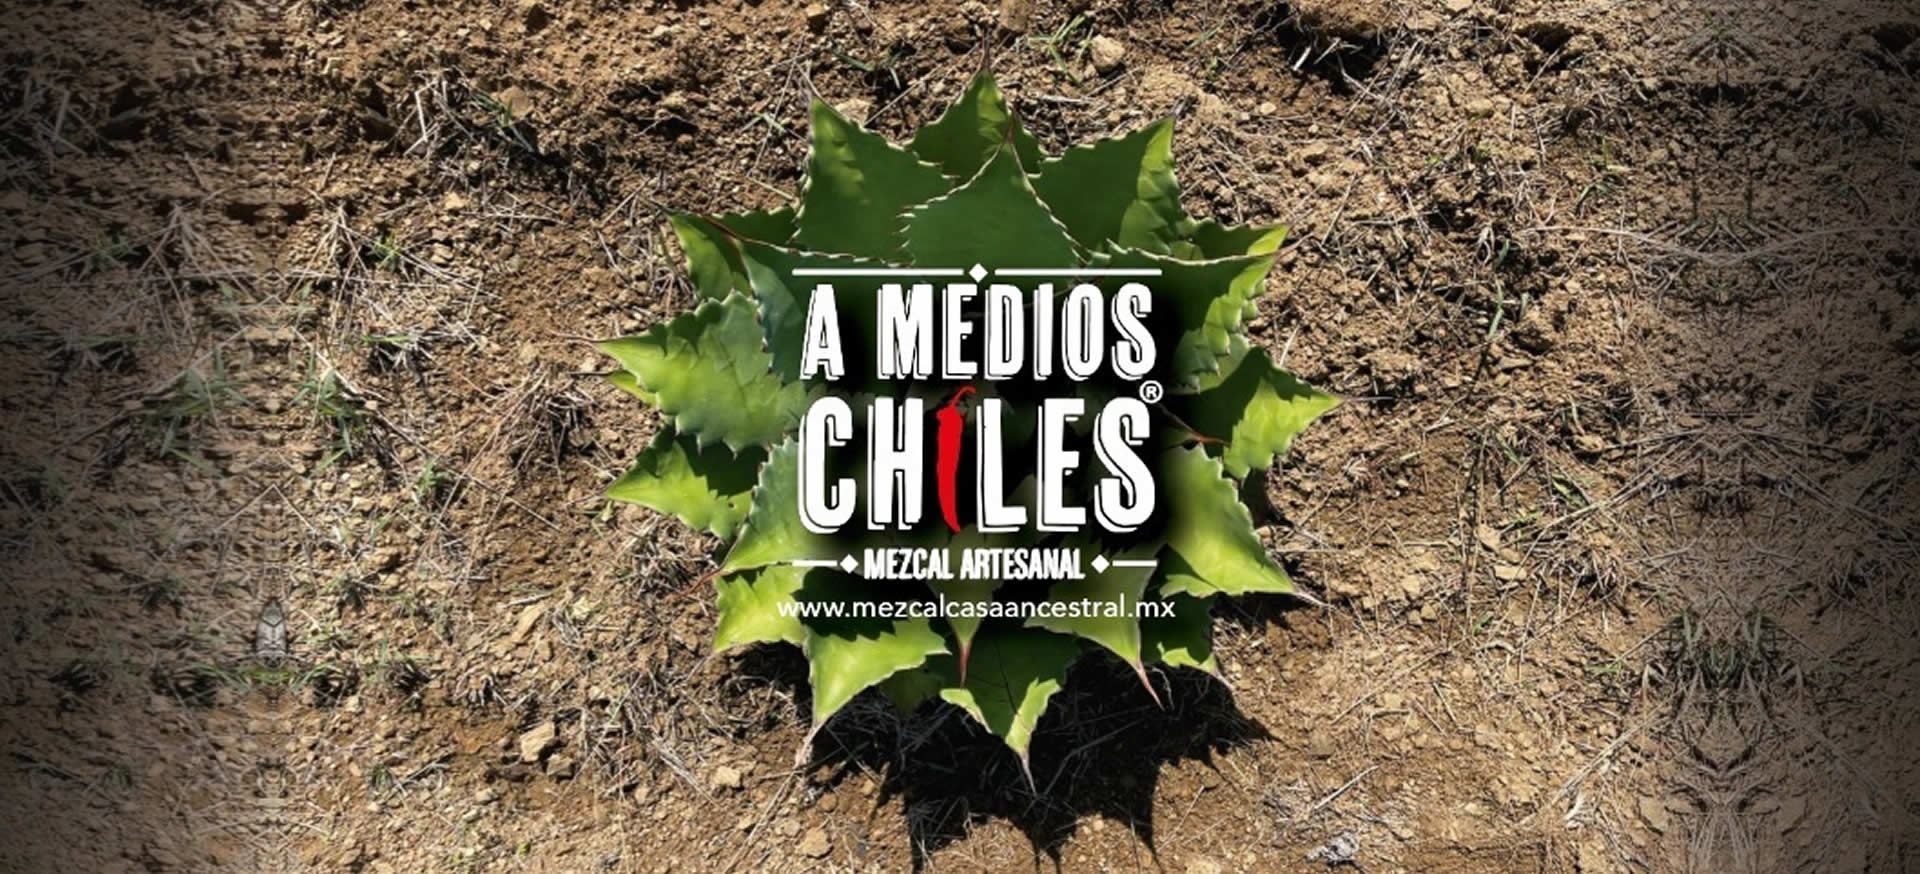 A Medios Chiles Mezcal Artesanal